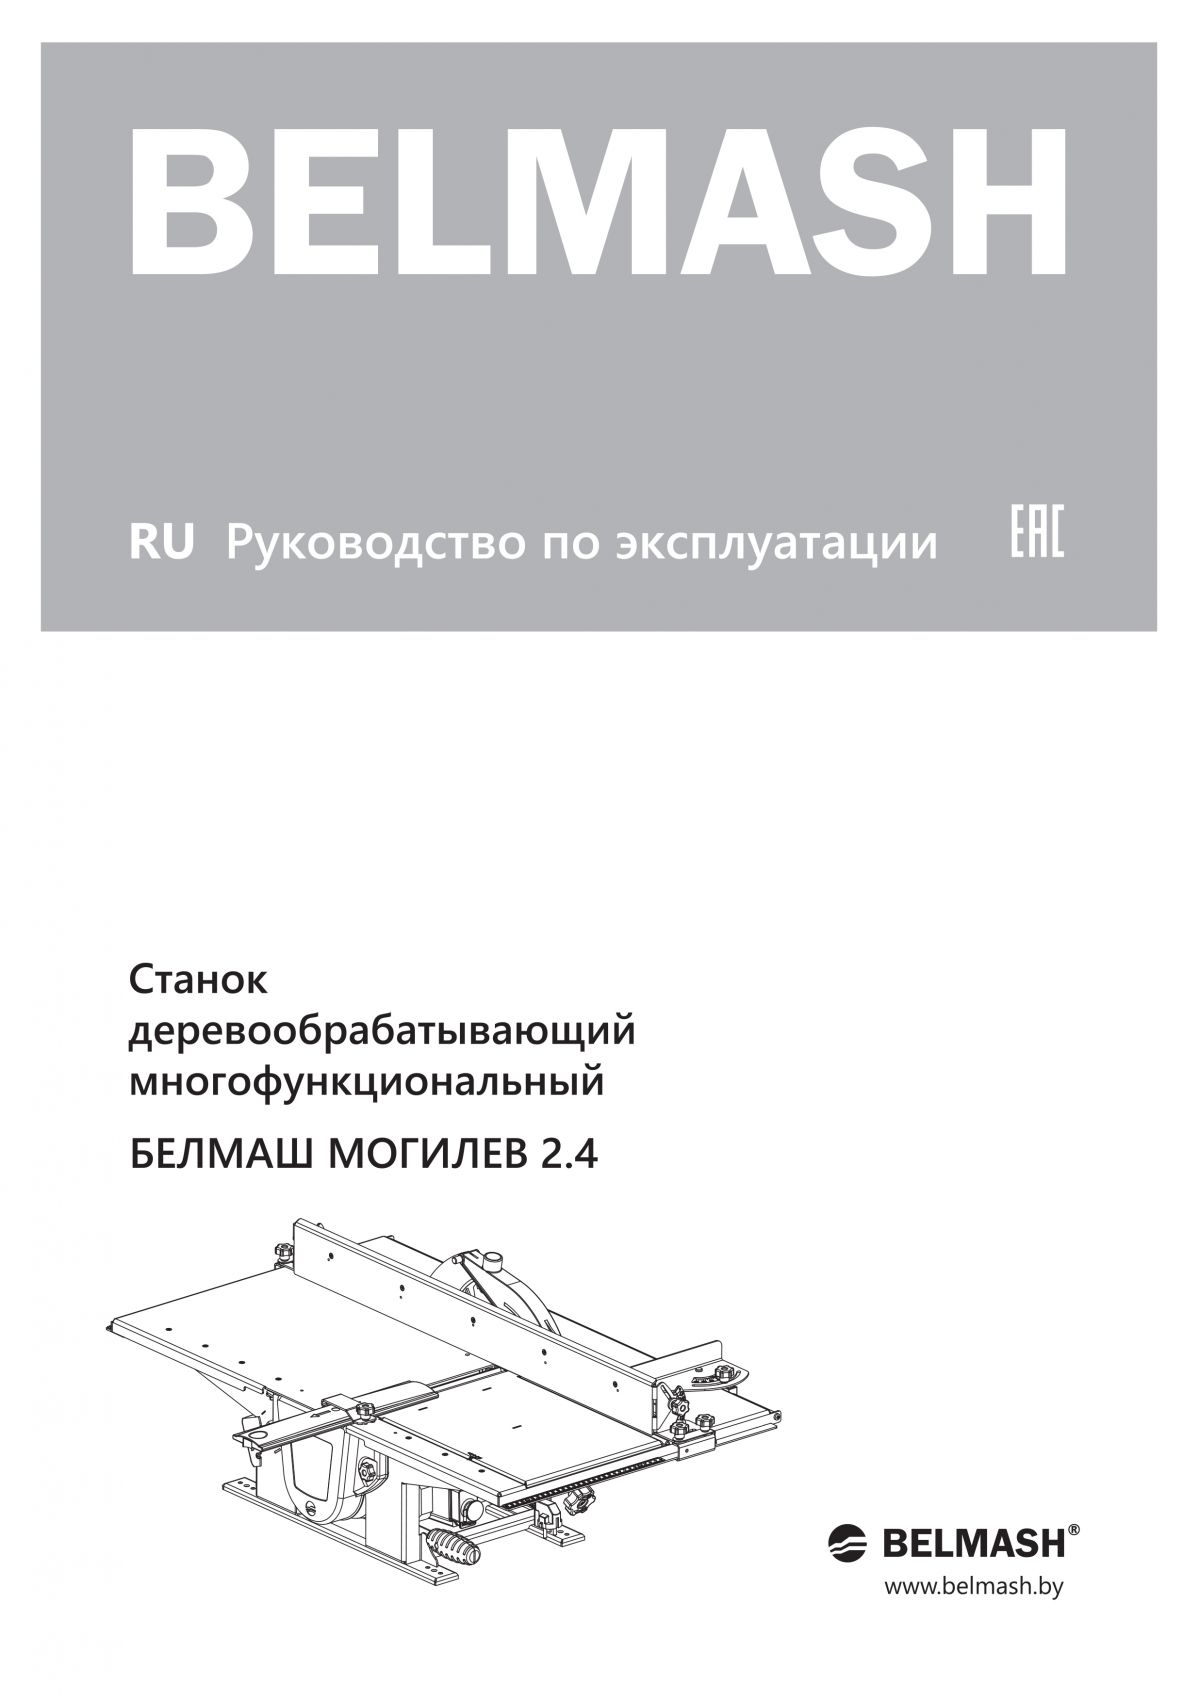 Руководство по эксплуатации для станка МОГИЛЕВ 2.4 (русский язык)